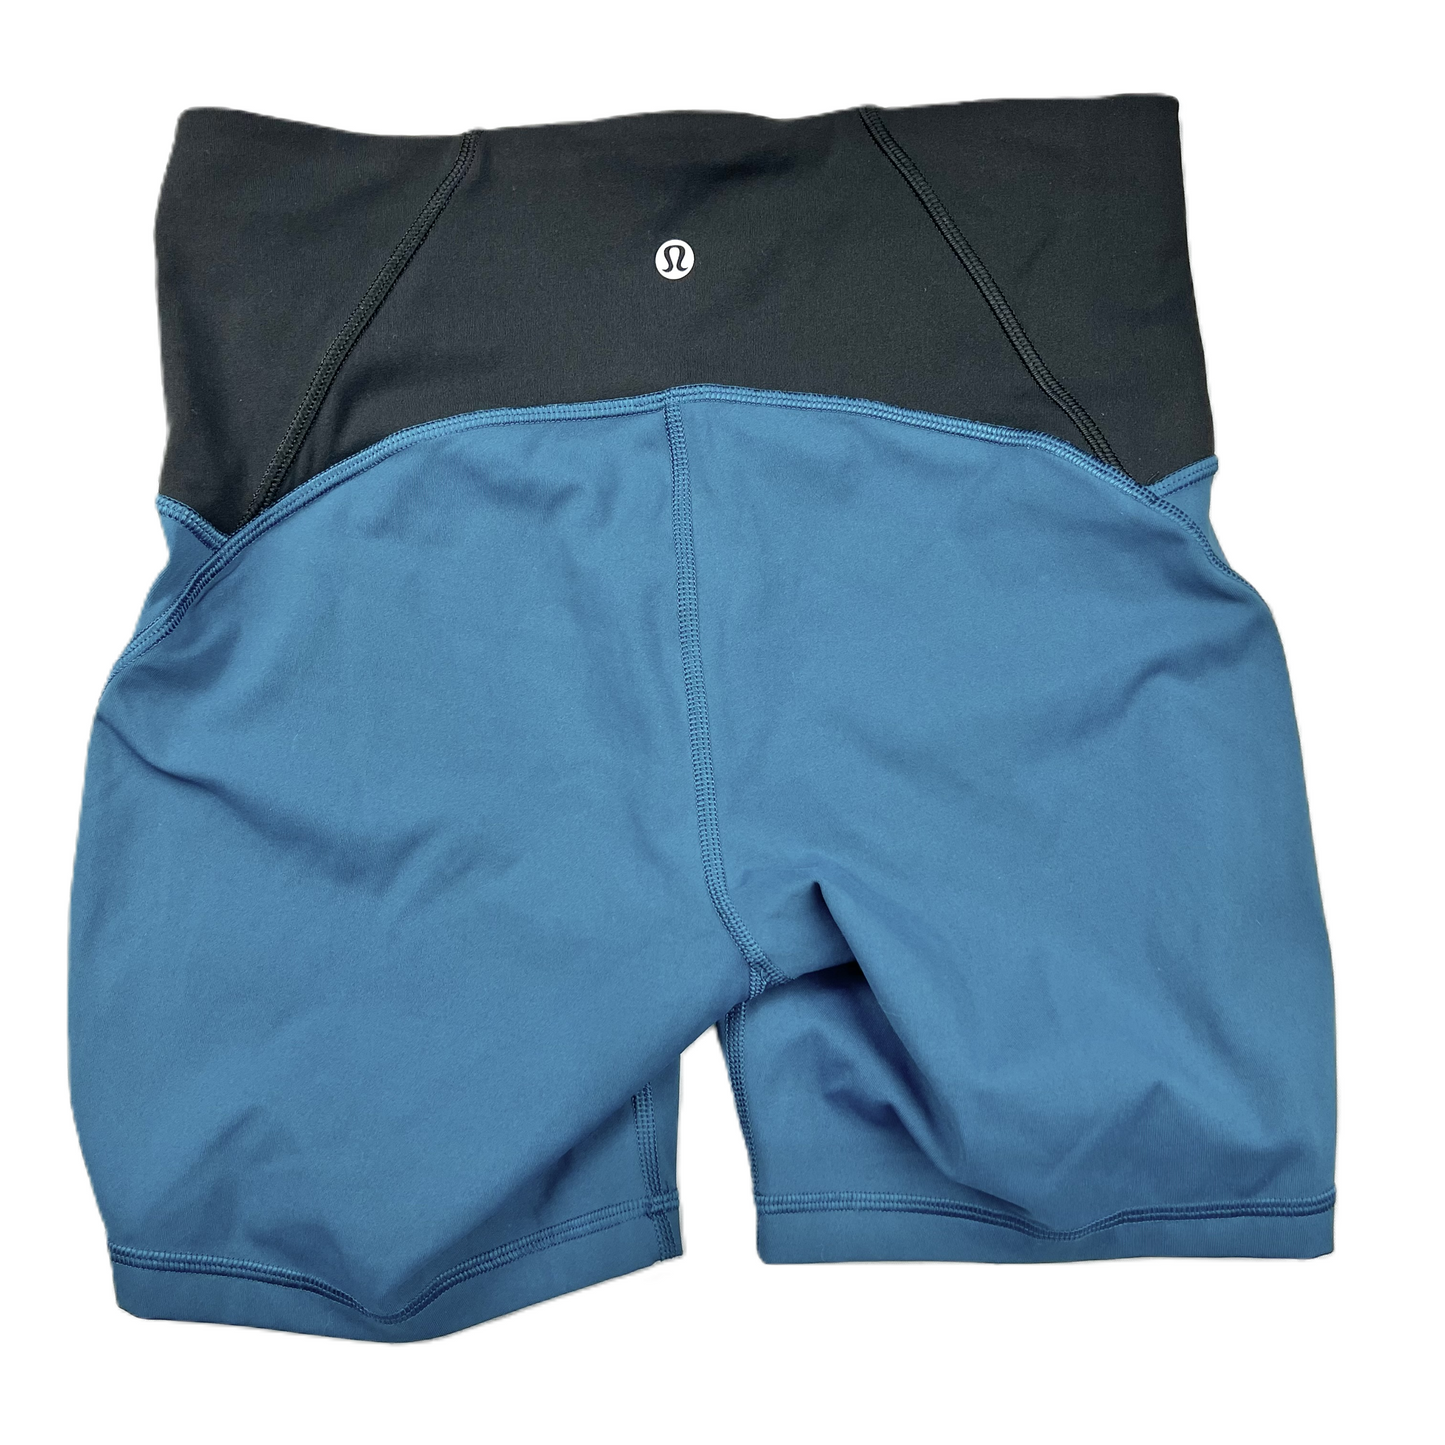 Black & Blue Athletic Shorts By Lululemon, Size: S